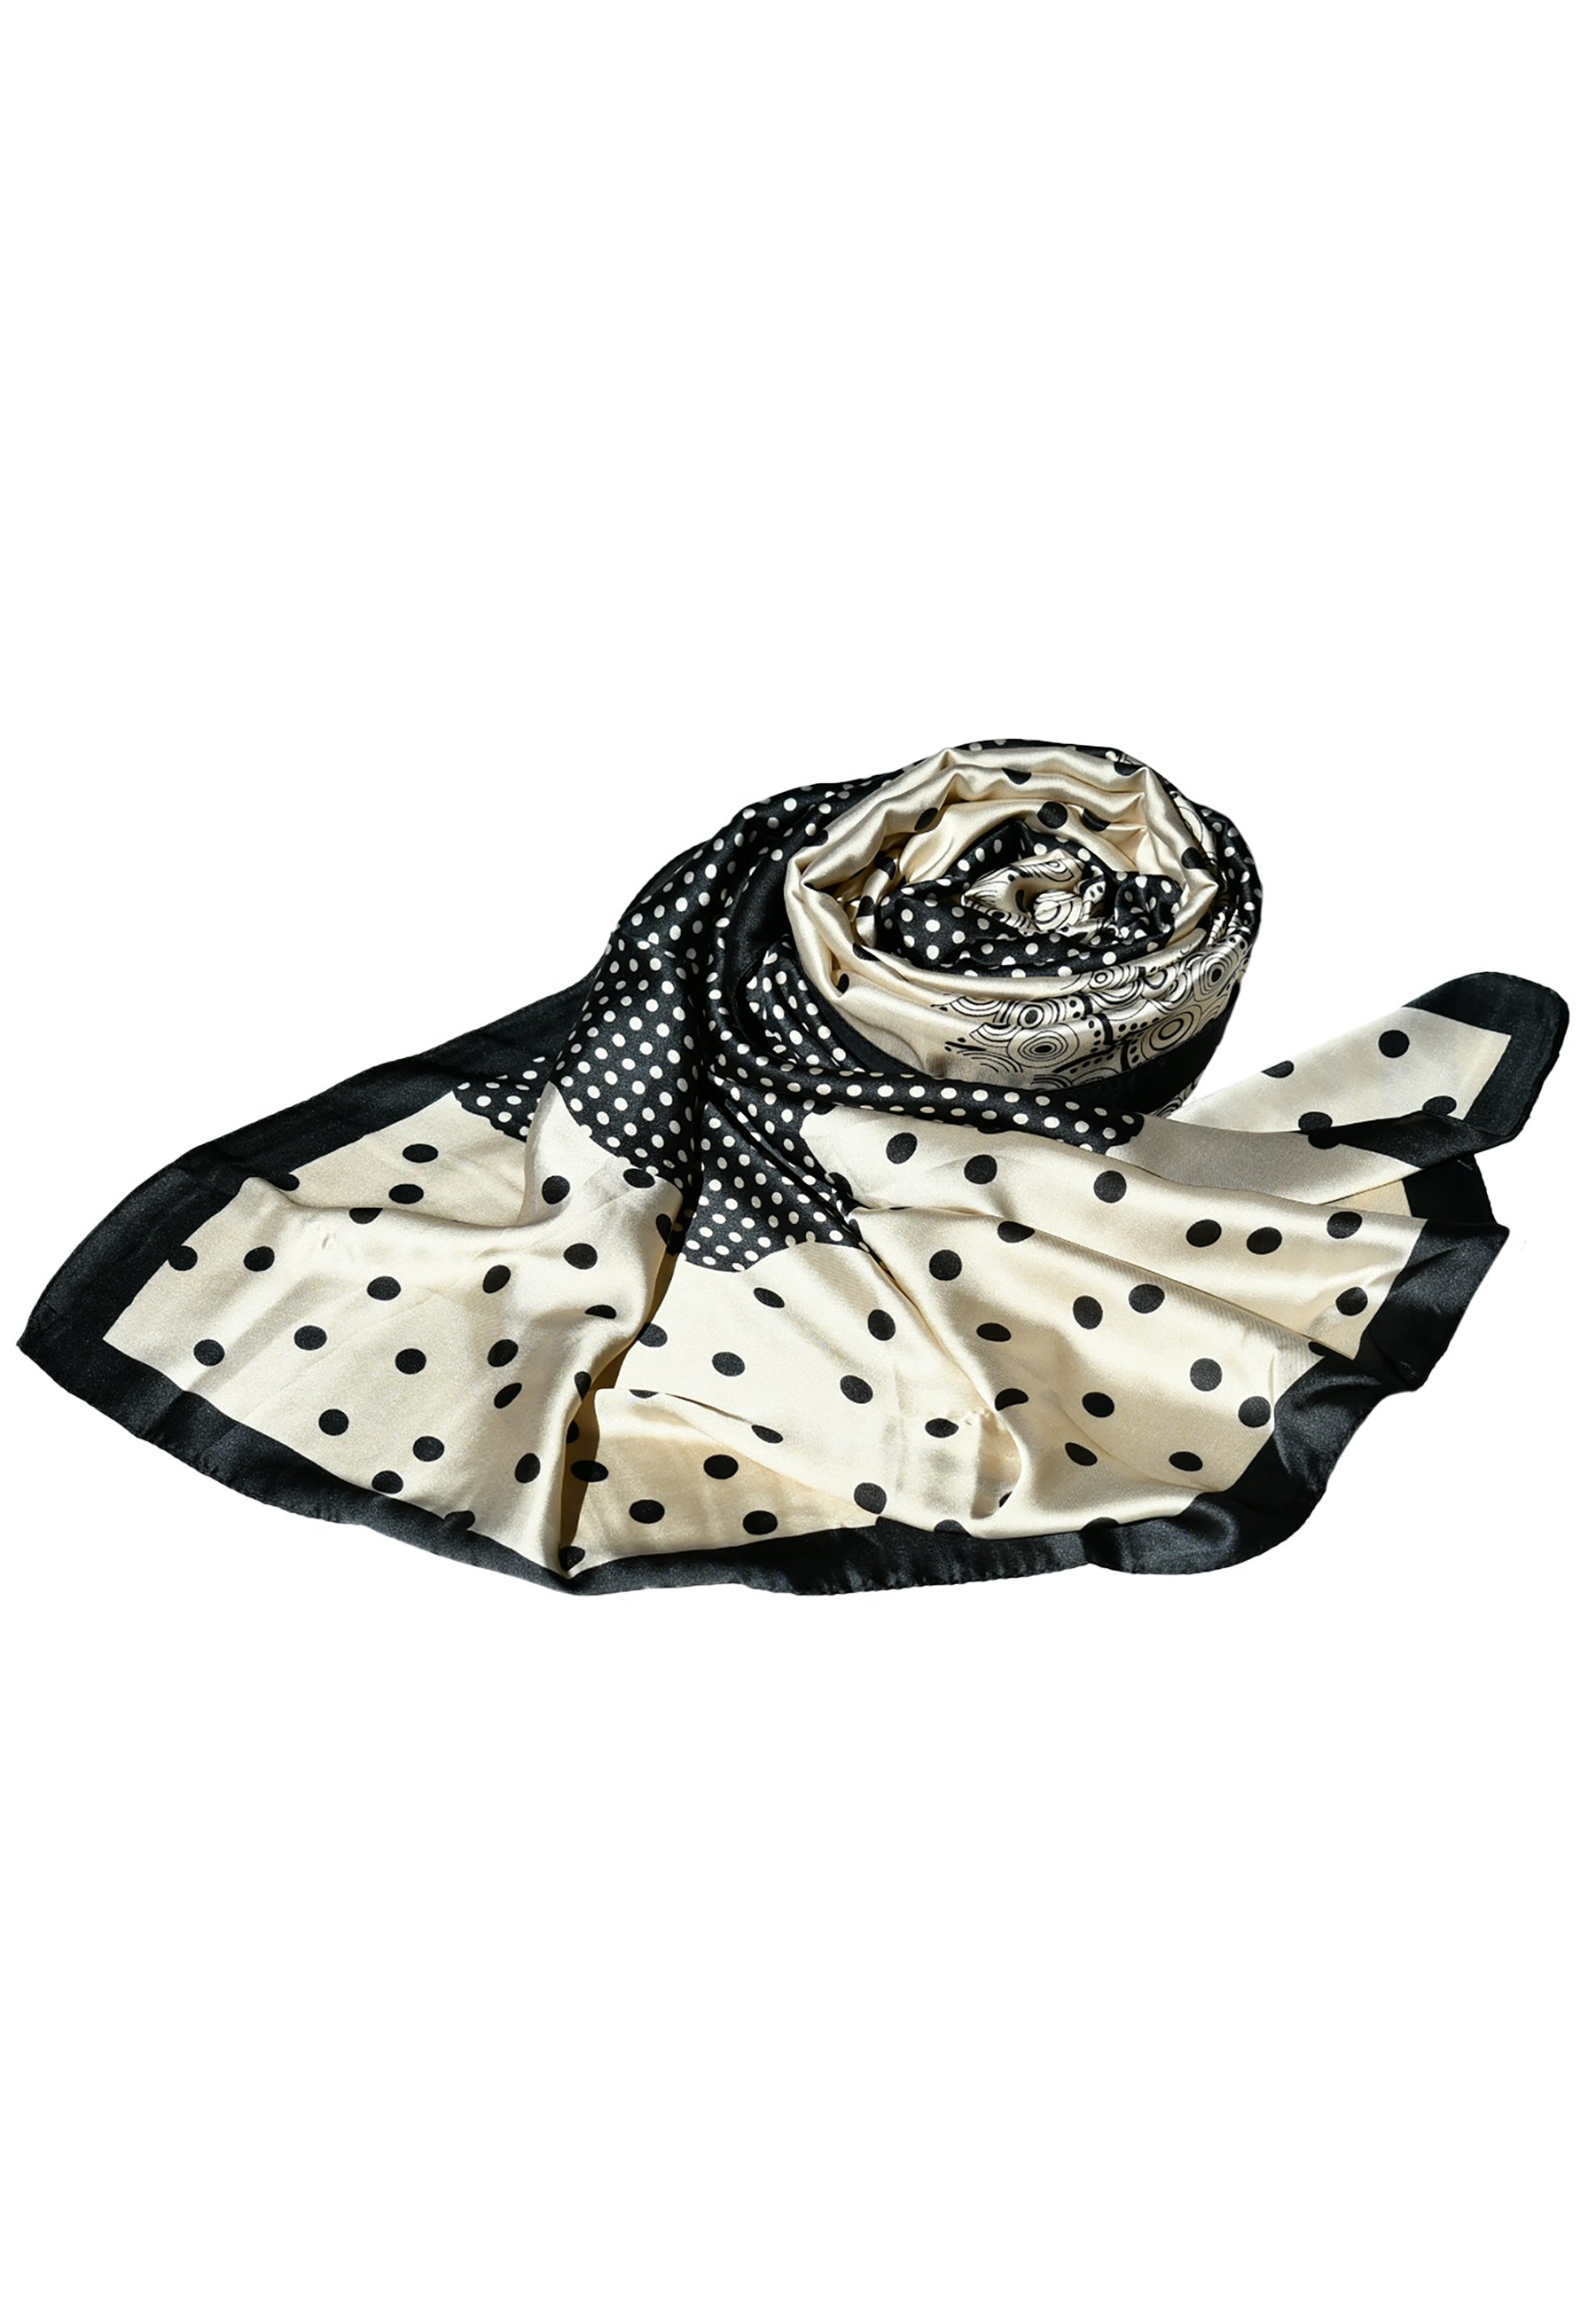 Blue Chilli Schal Hochwertiger für Kopftuch jedes Stilvoller bedruckter Seide, Seidenschal für Schal aus Design1 Party, Frauen, Modedesigner Eleganz Outfit